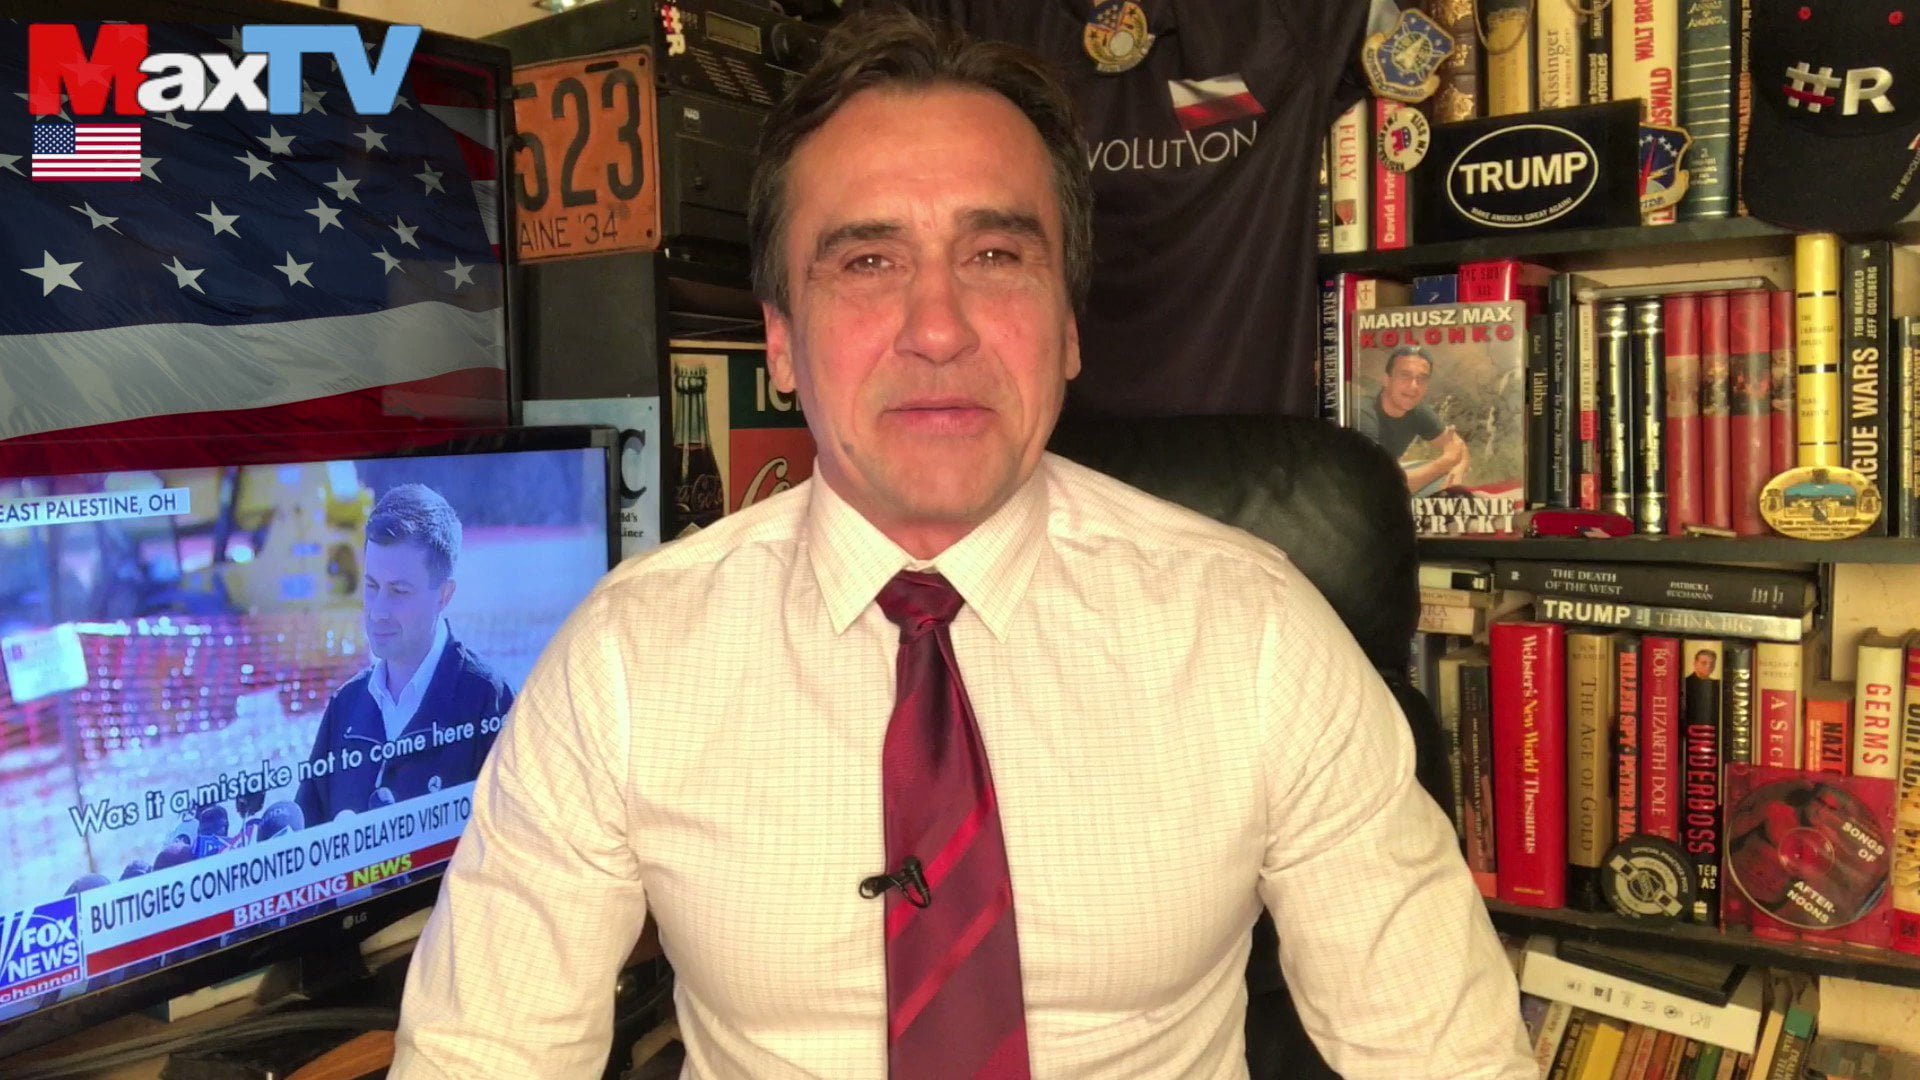 Mariusz Max Kolonko w białej koszuli i czerwonym krawacie stoi przed regałem z książkami i pamiątkami, a w tle widać telewizor wyświetlający kanał informacyjny oraz flagę USA.